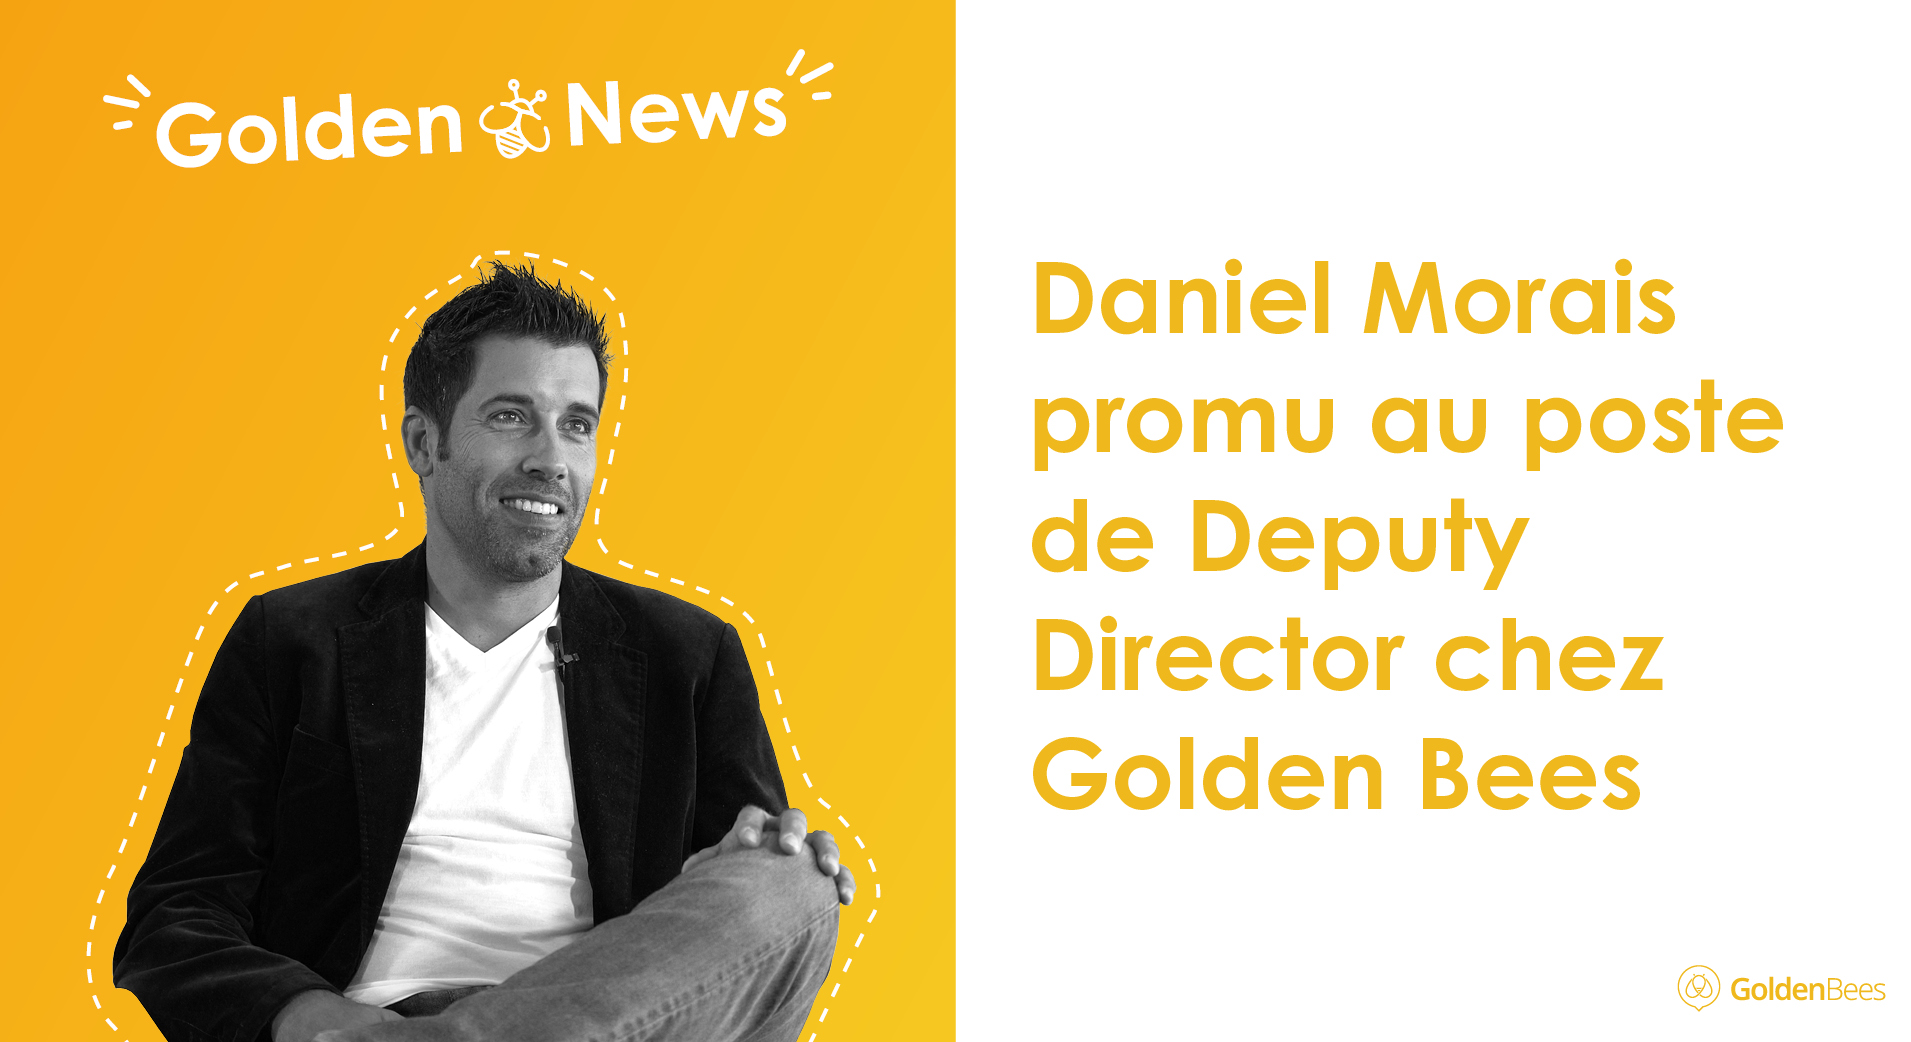 Daniel Morais promu au poste de Deputy Director chez Golden Bees